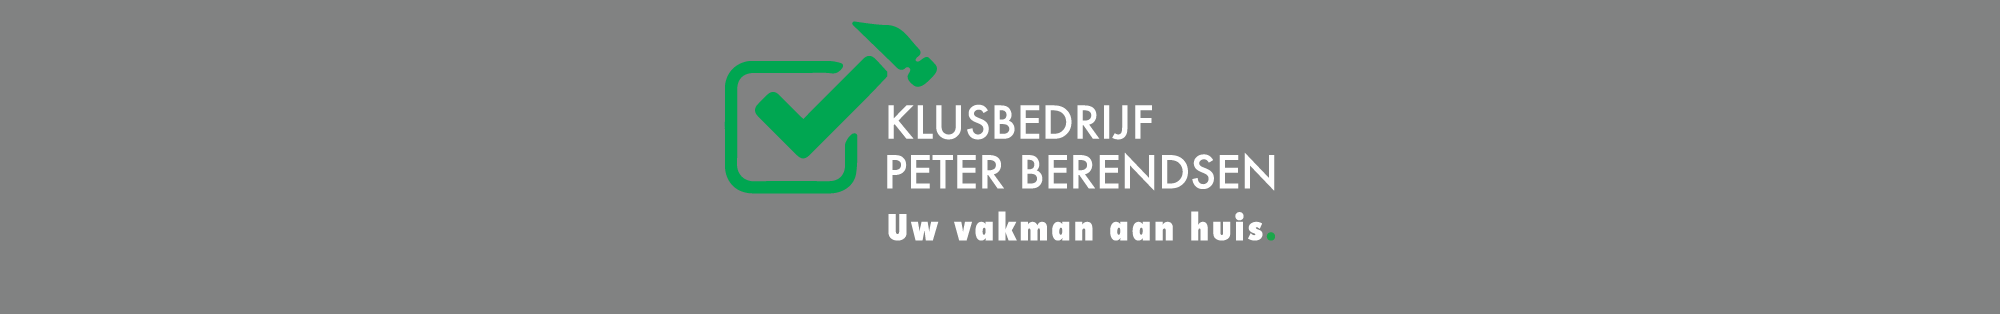 Klusbedrijf Peter Berendsen